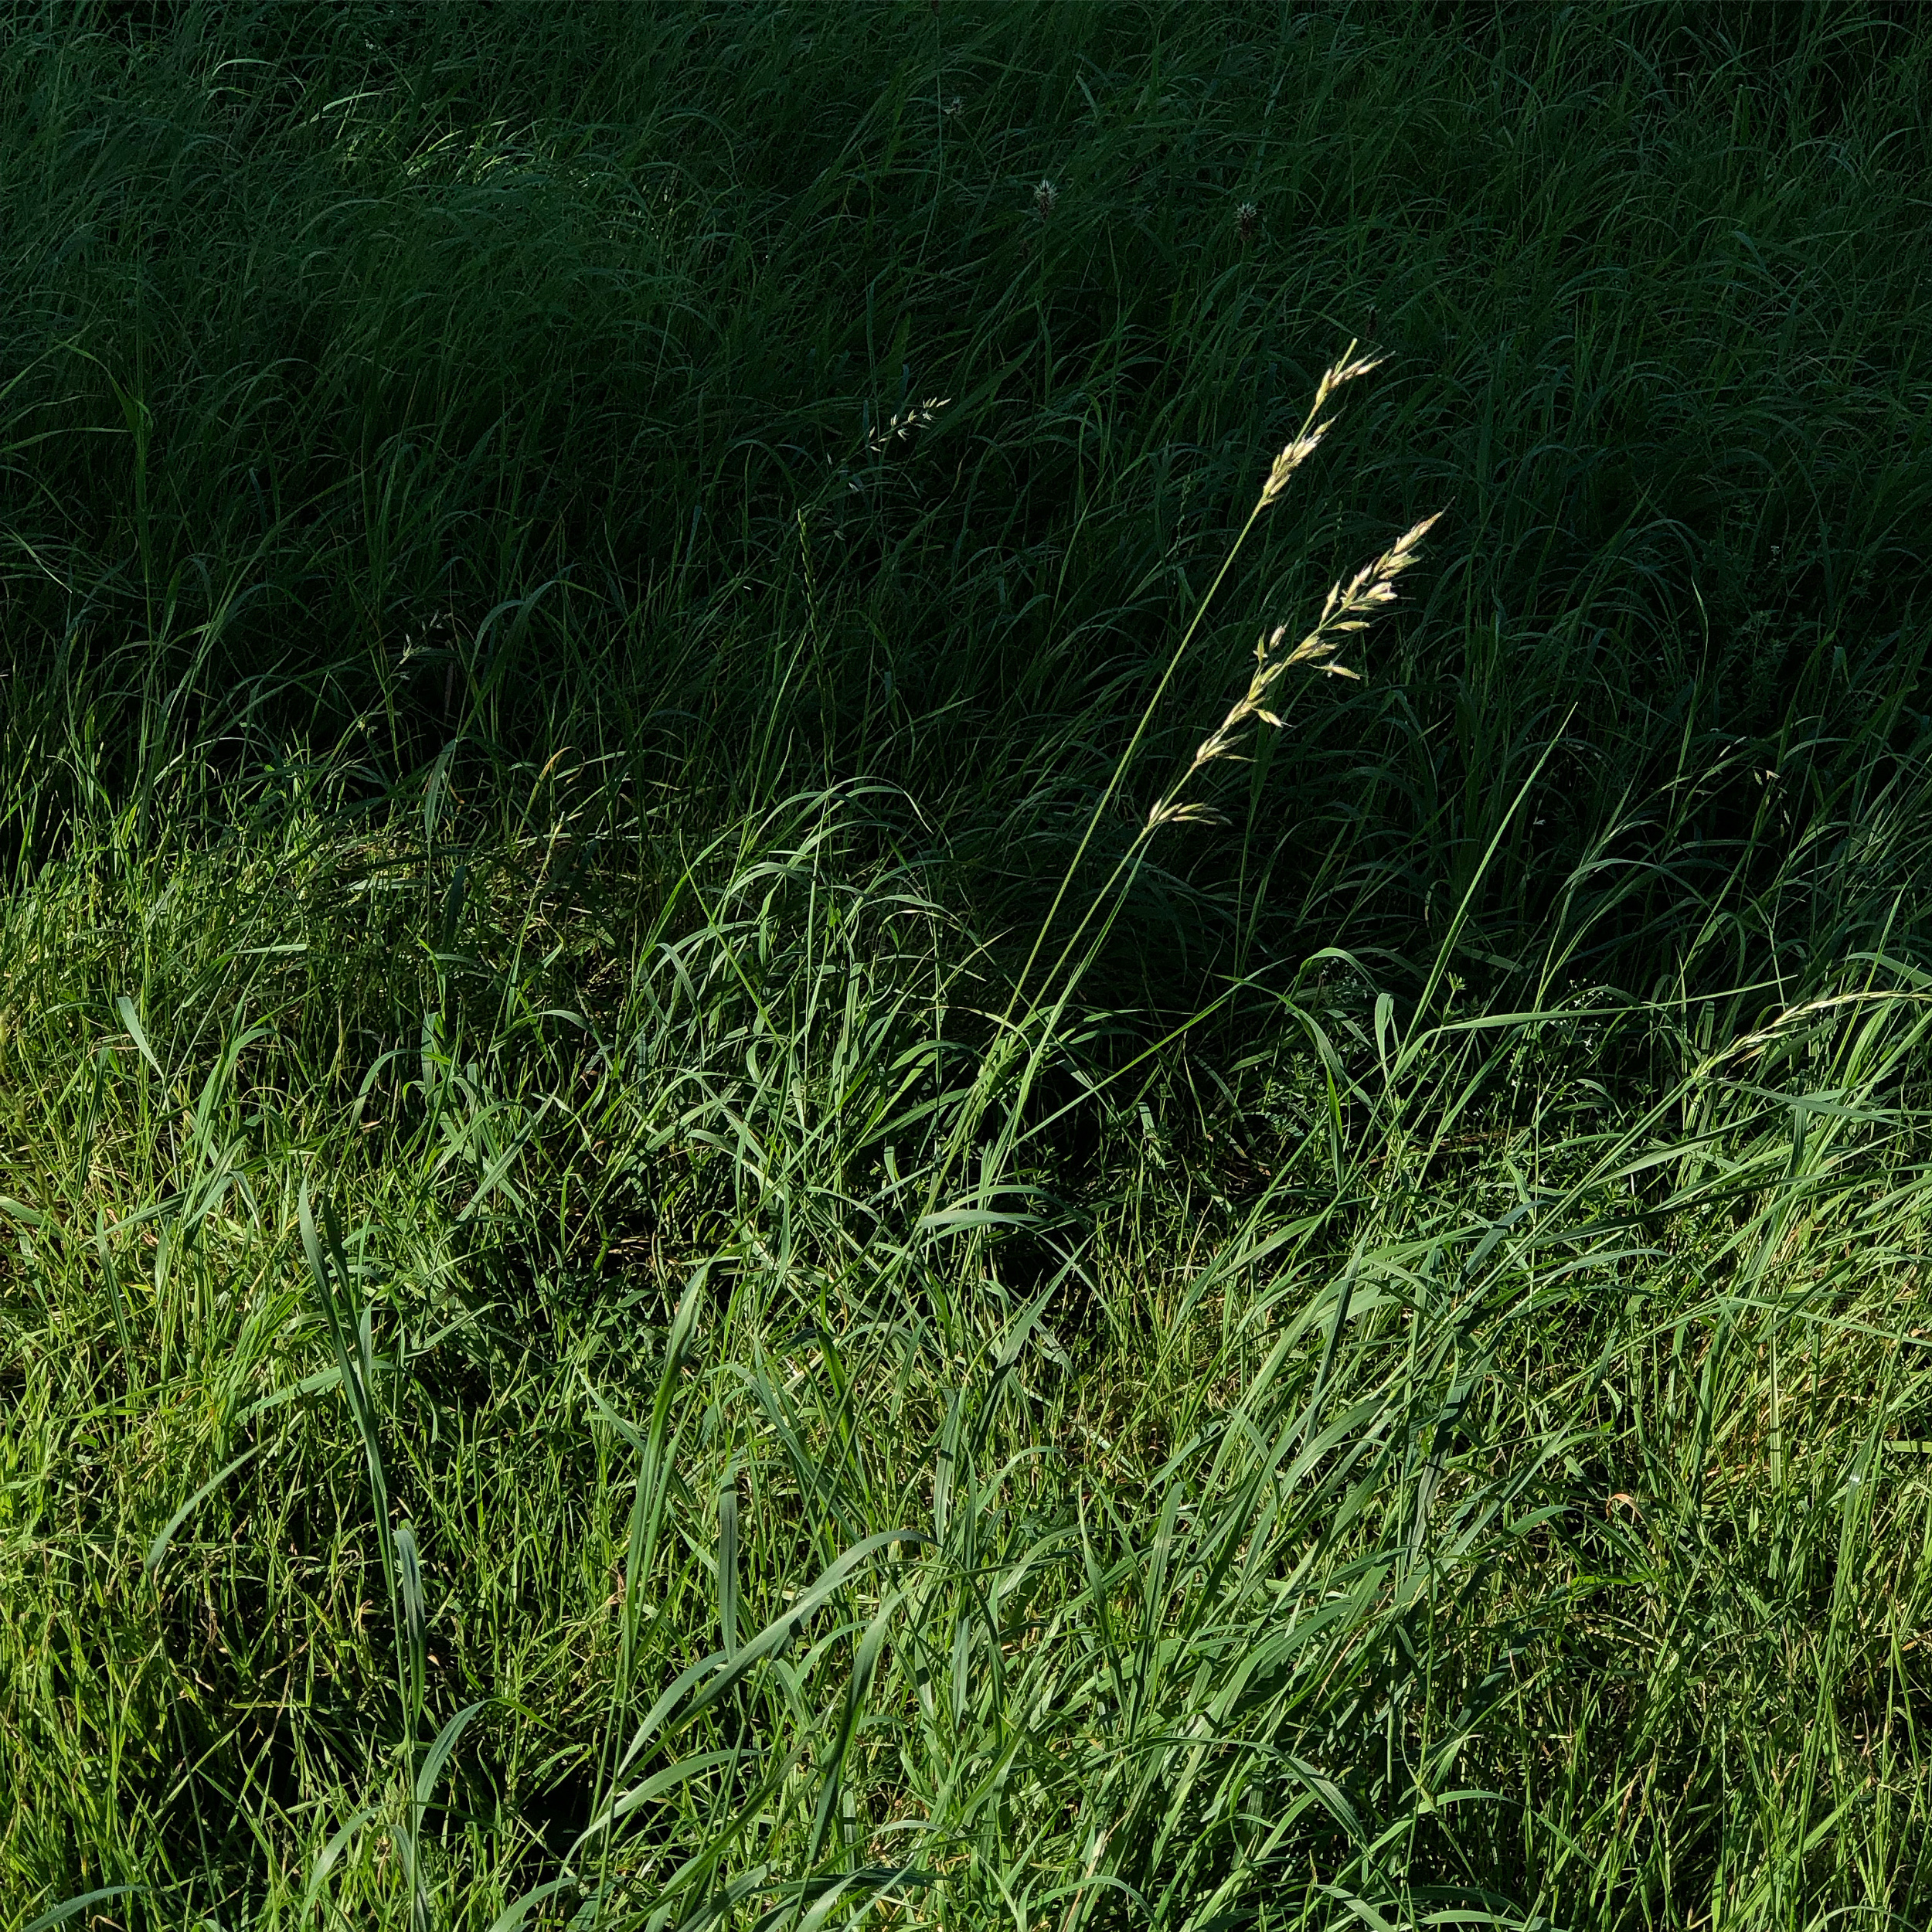 Summer grass